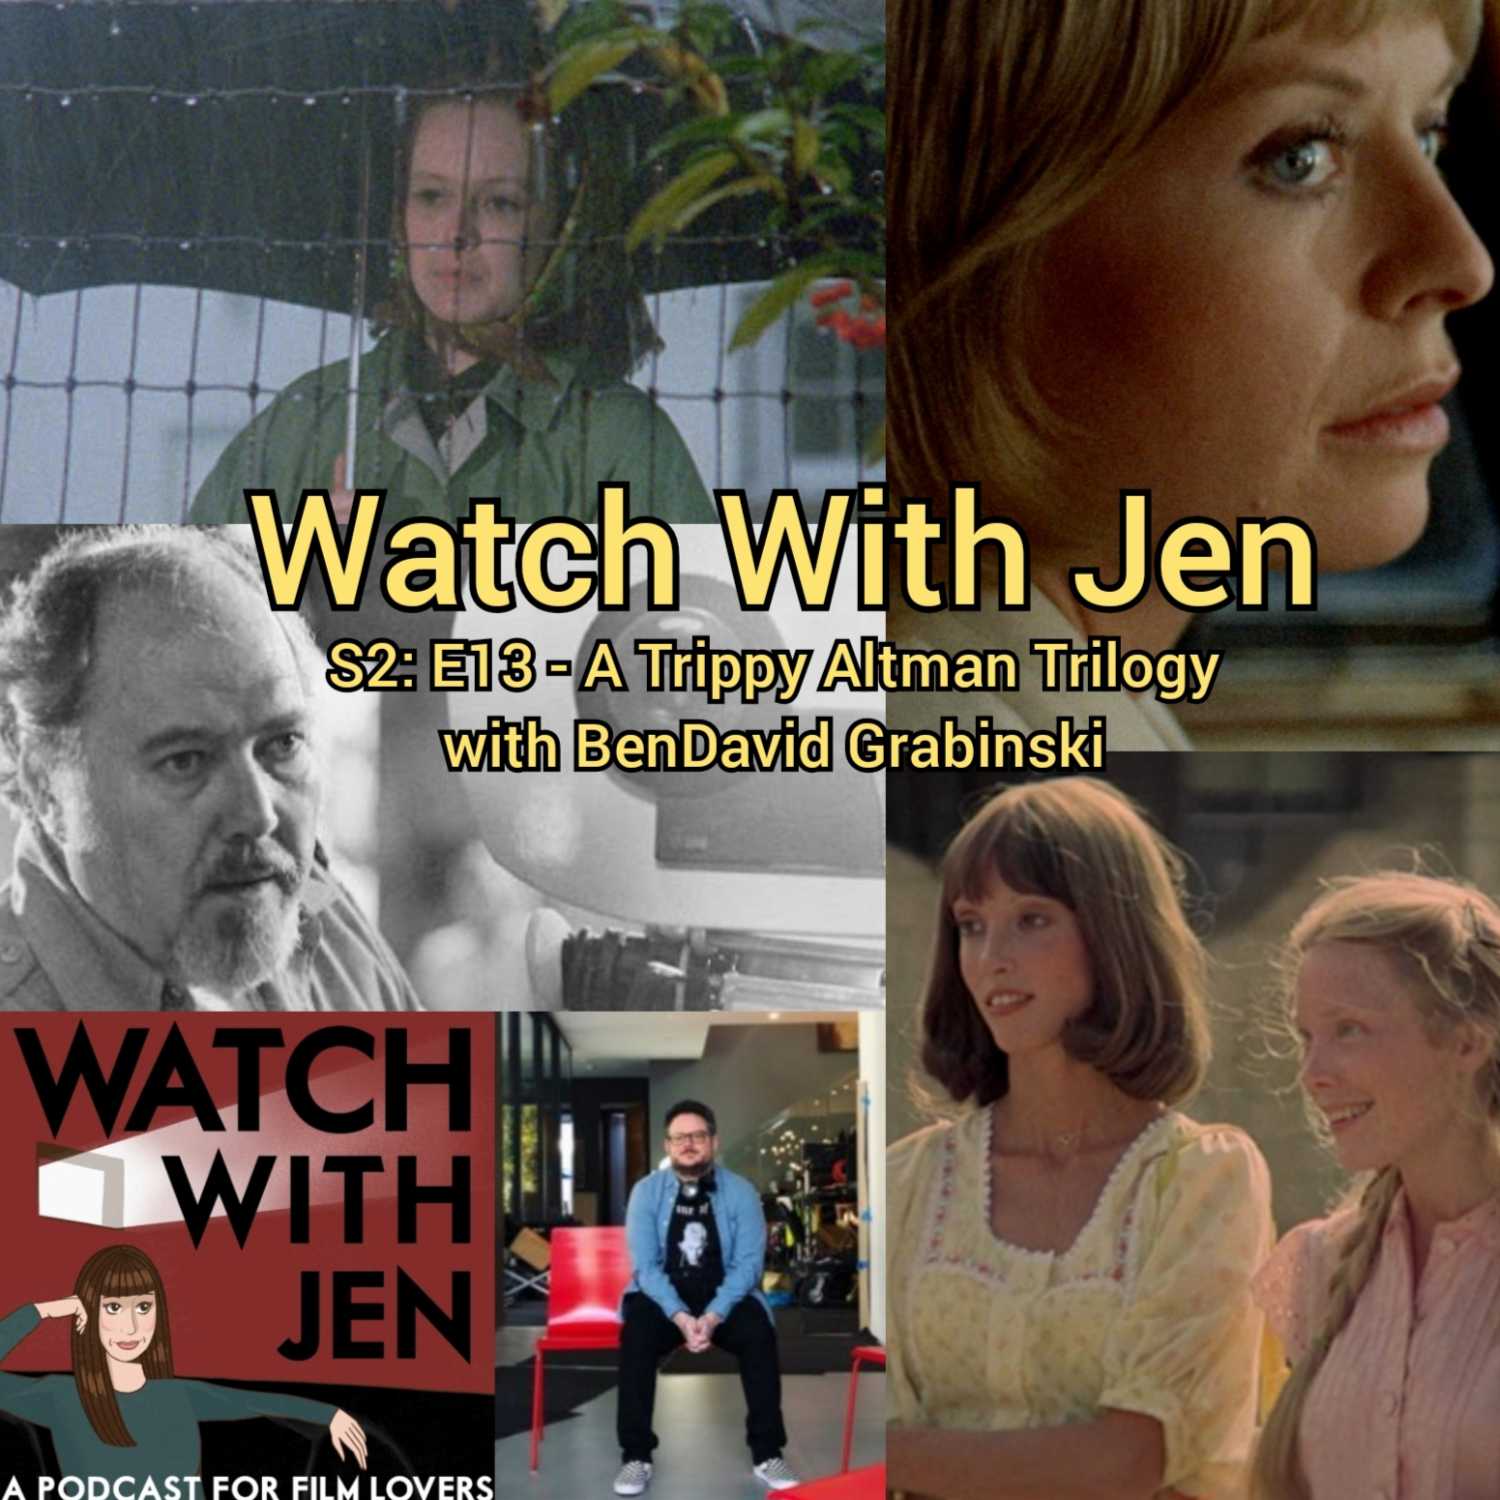 Watch With Jen - S2: E13 - A Trippy Altman Trilogy with BenDavid Grabinski